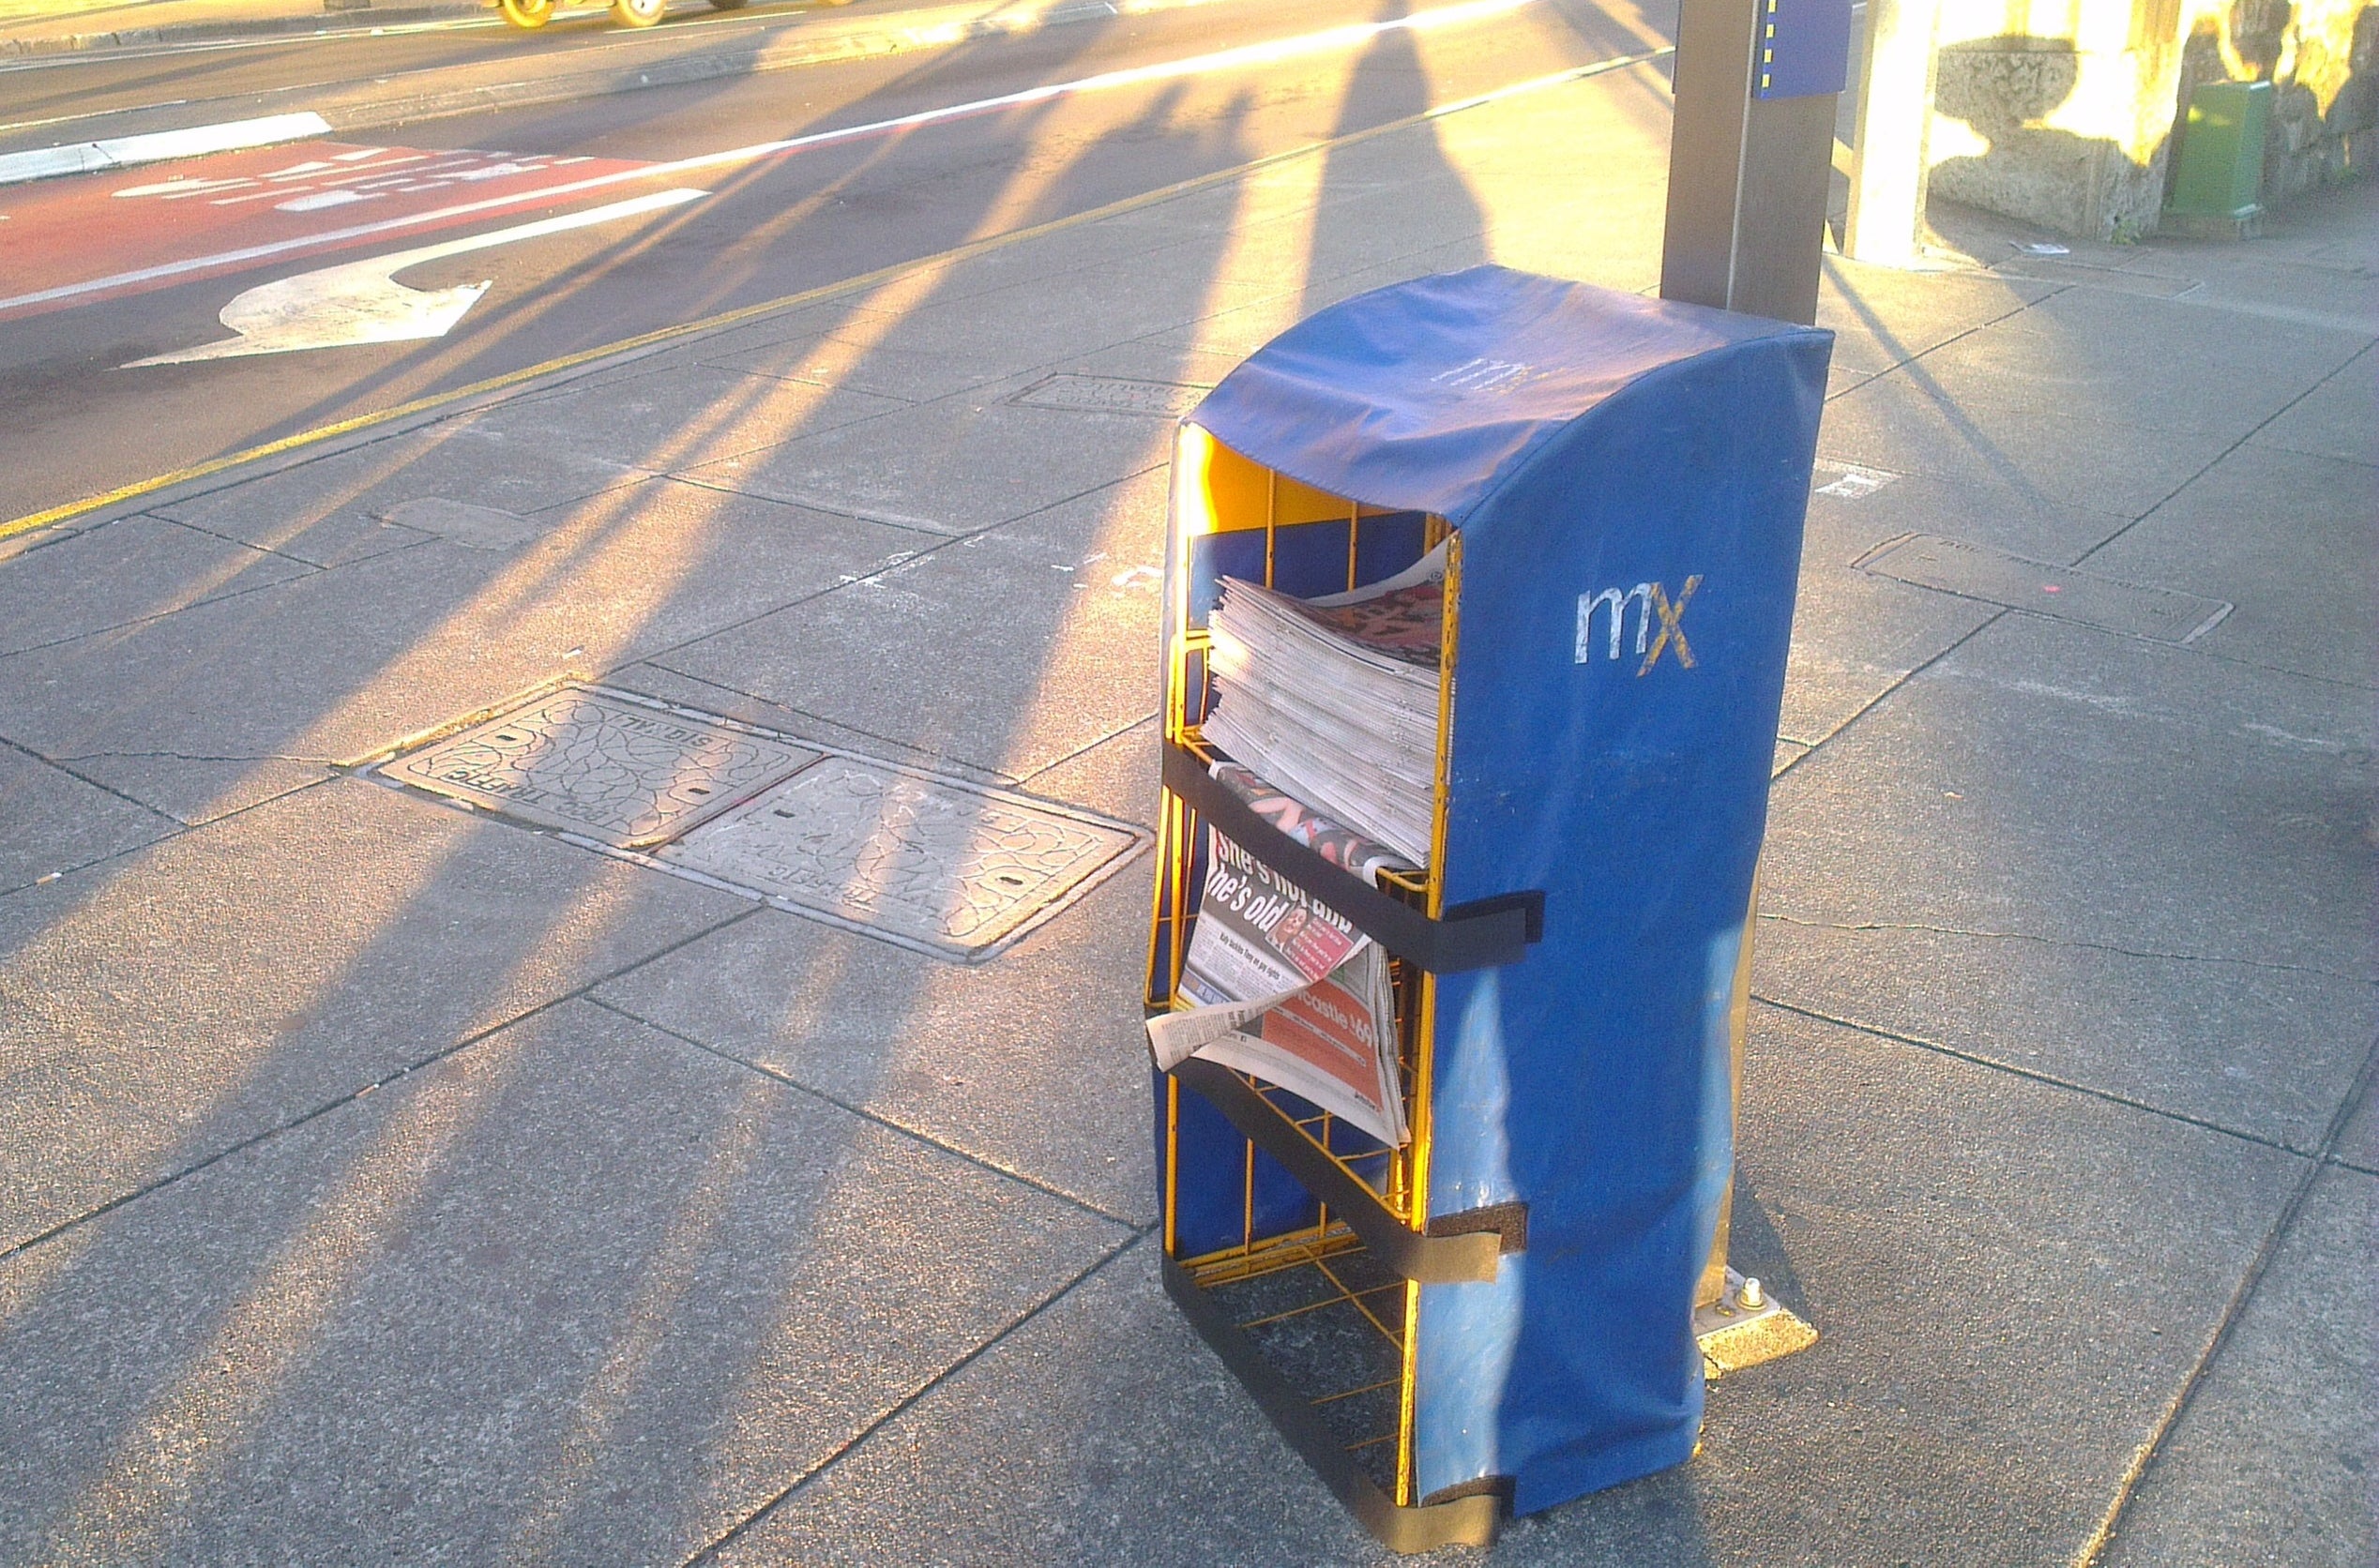 An mX newspaper dispenser on the street